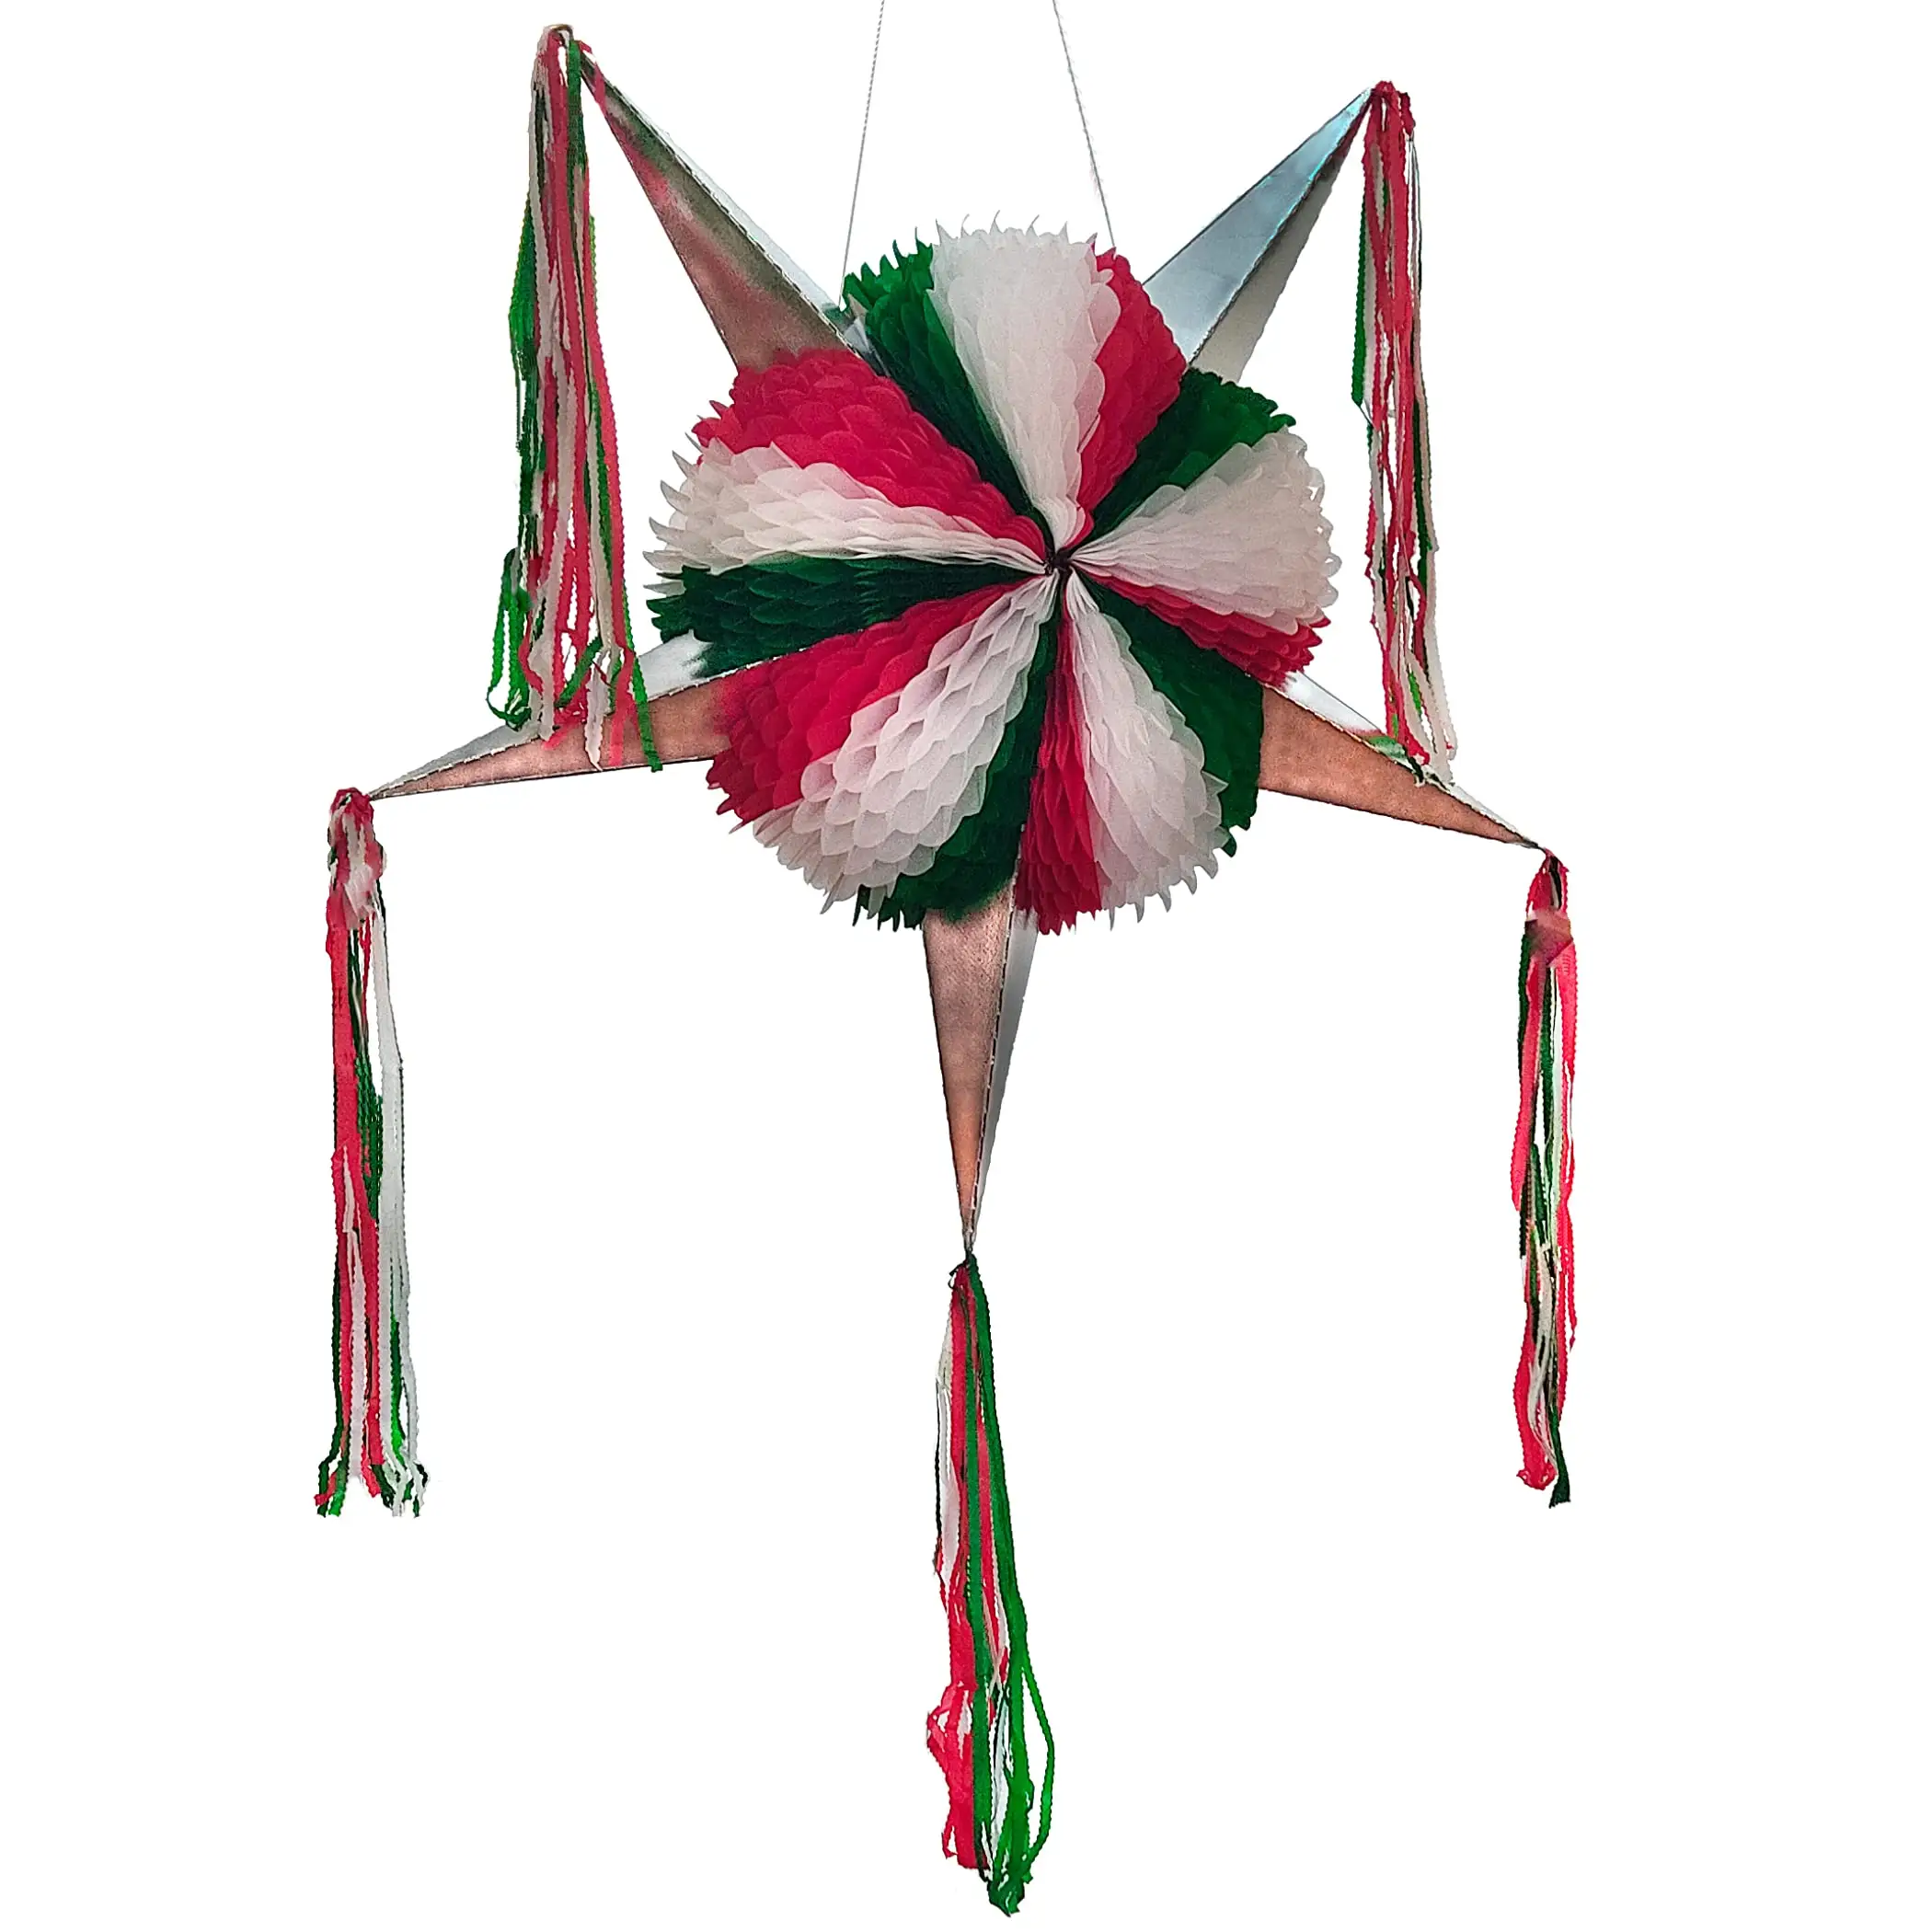 Mexikos Unabhängigkeitstag Party-Dekoration Pinata groß grün weiß rot 5-Punkte-Stern faltbar Pinata Fiesta Mexicana Pinata